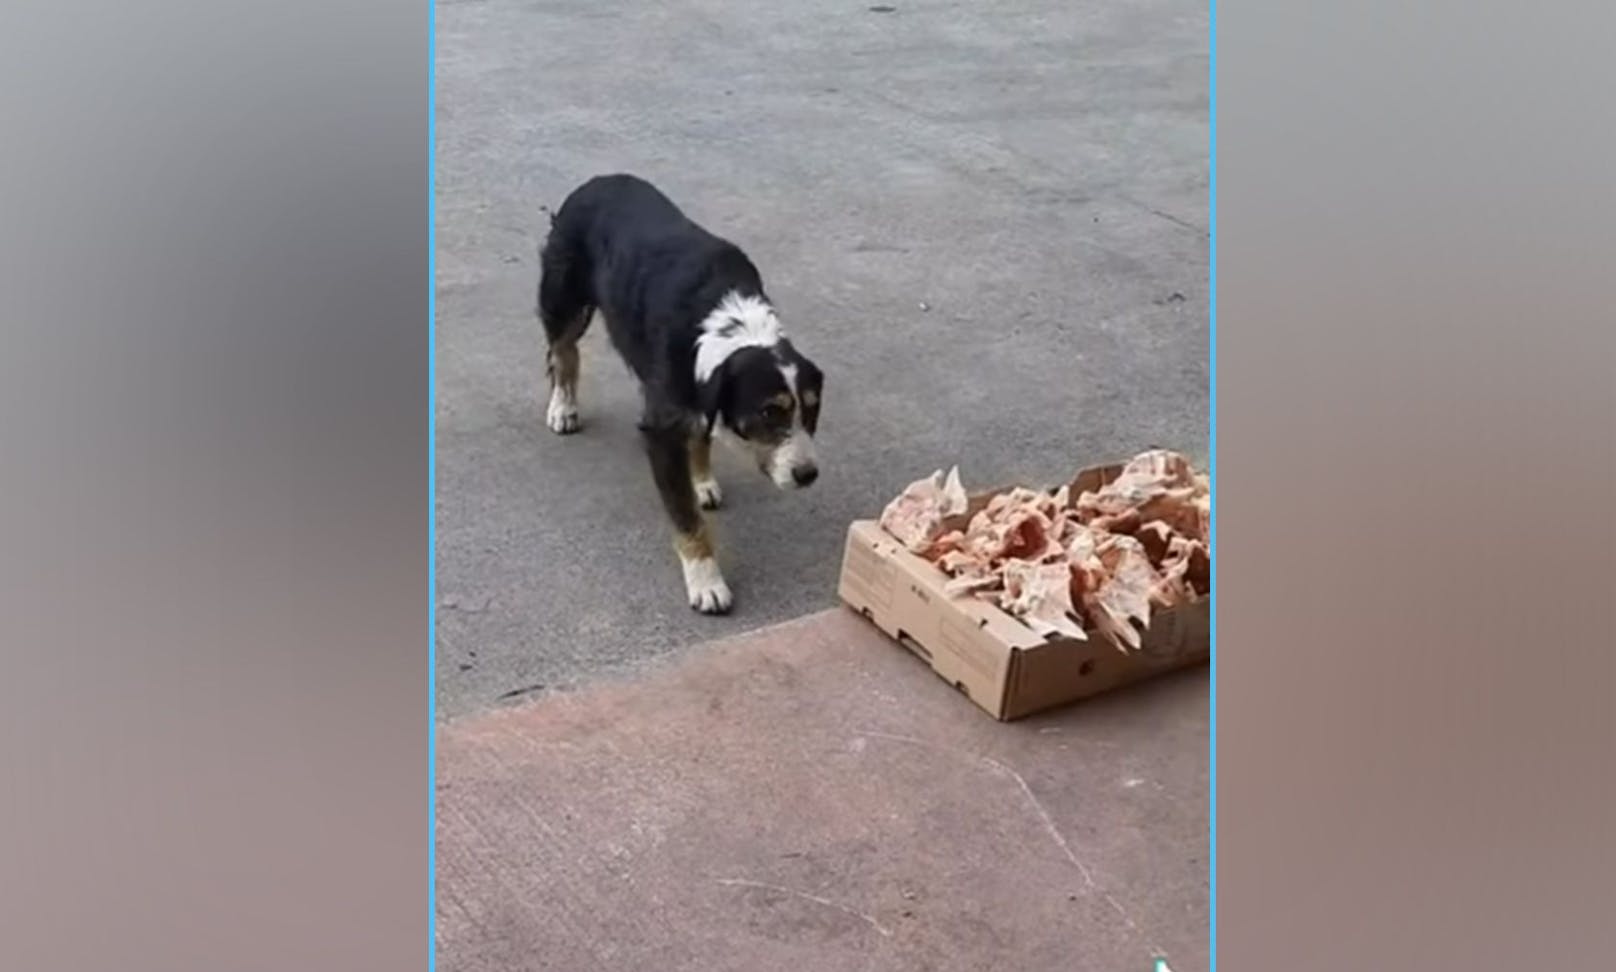 Vorsichtig nähert sich ein Straßenhund in der Türkei einem Karton voller Frischfleisch-Reste... "ist das für mich?" scheint er fragen zu wollen. 